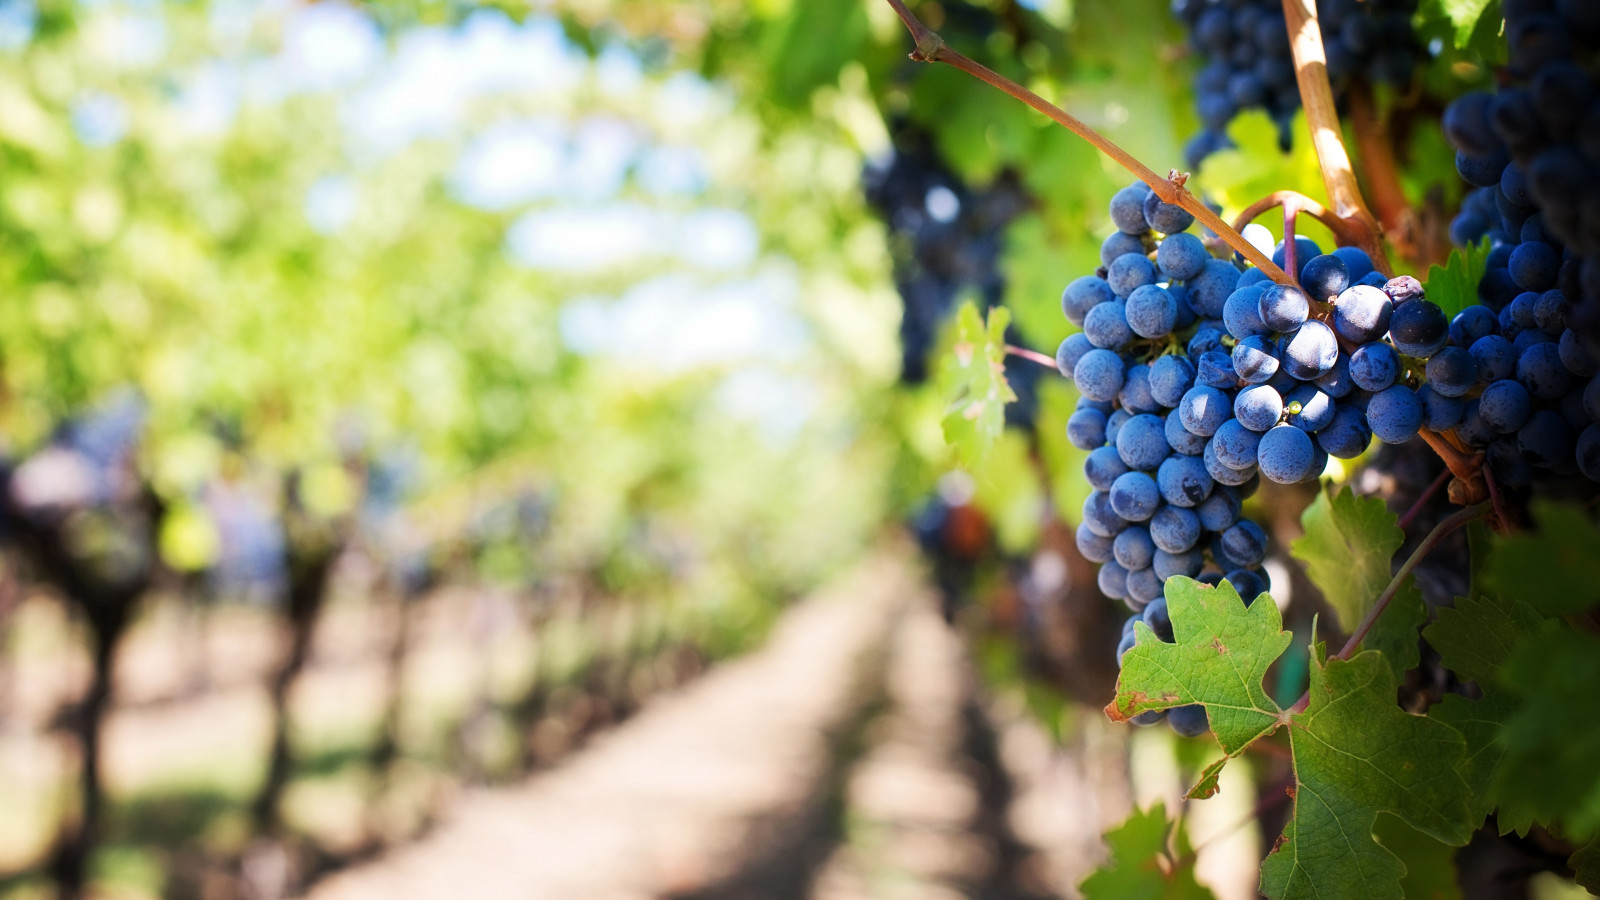 Grapes in vineyard wallpaper 1600x900